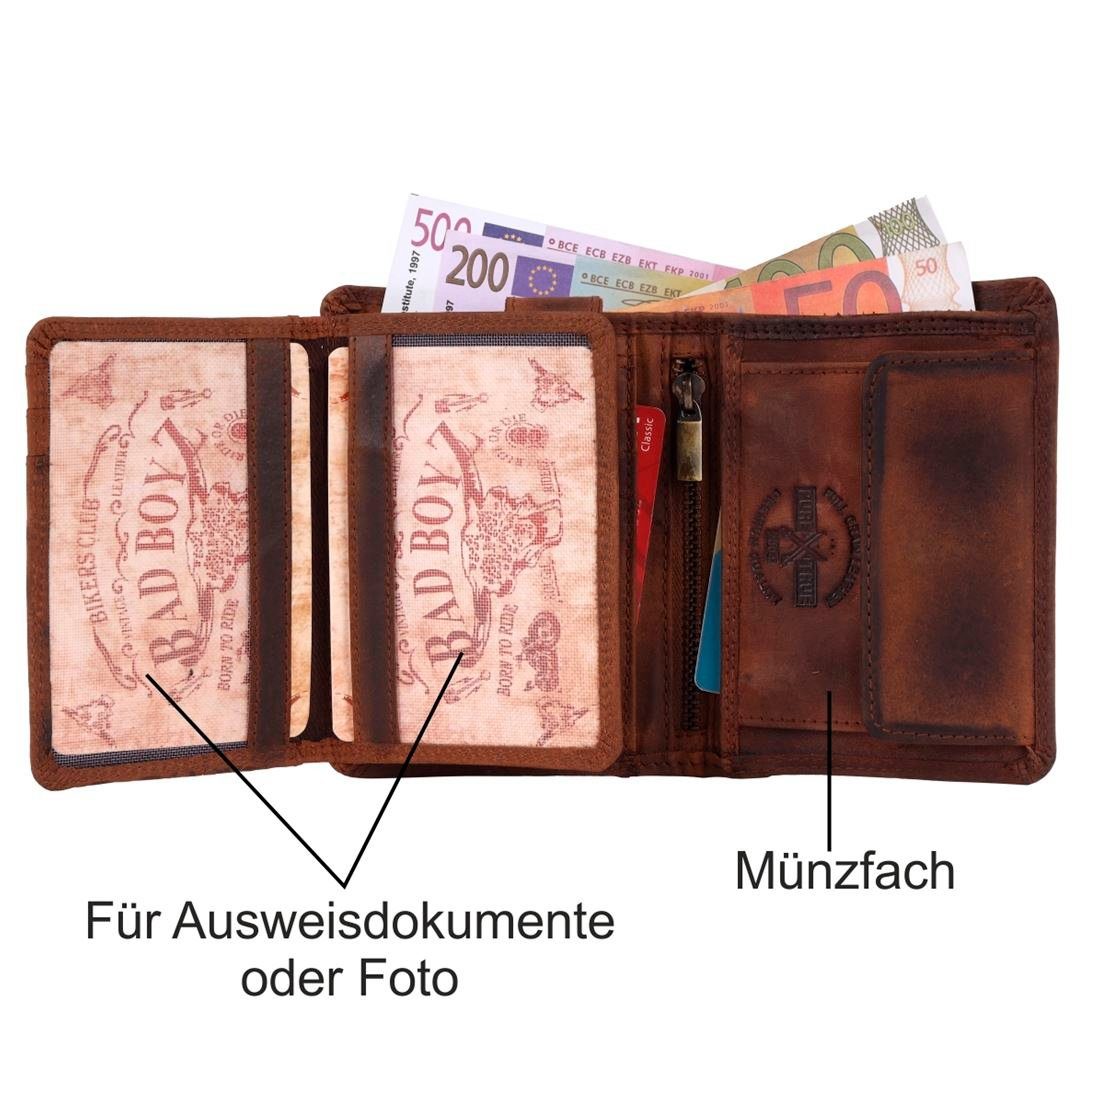 SHG mit RFID Geldbörse Börse Leder Portemonnaie, Münzfach braun Büffelleder Herren Männerbörse Lederbörse Schutz Brieftasche